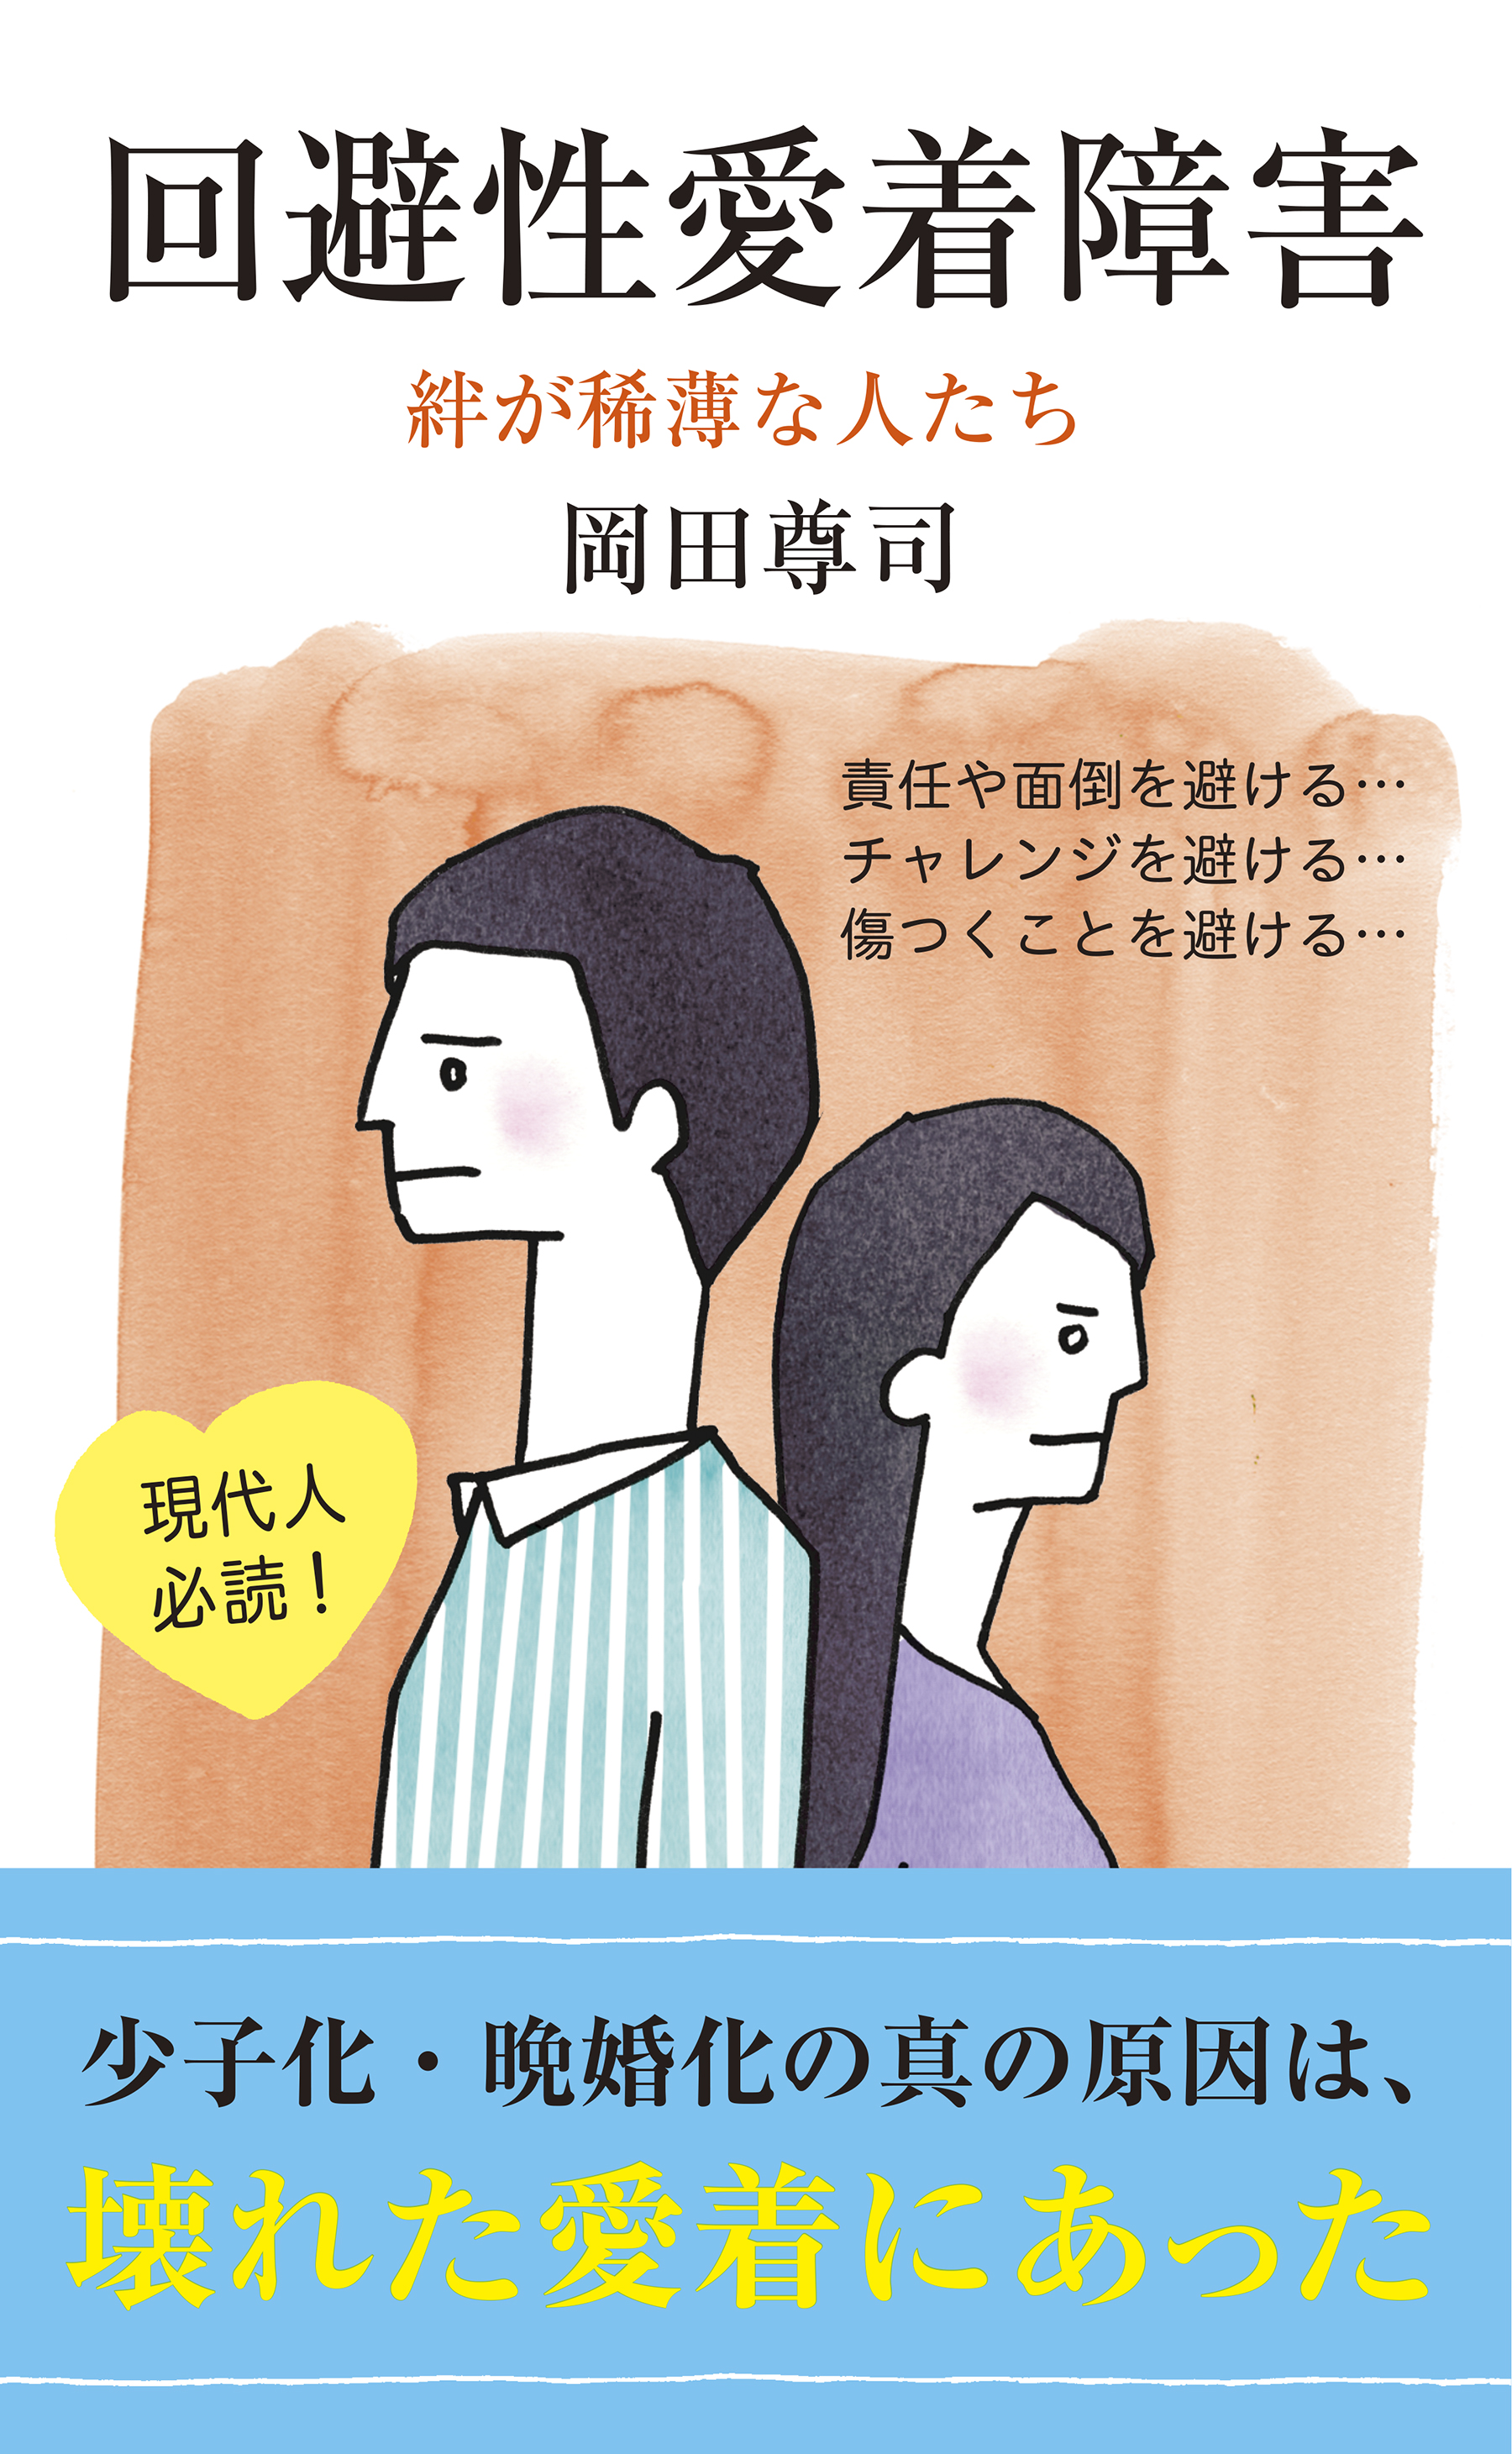 回避性愛着障害～絆が稀薄な人たち～ - 岡田尊司 - 漫画・ラノベ（小説